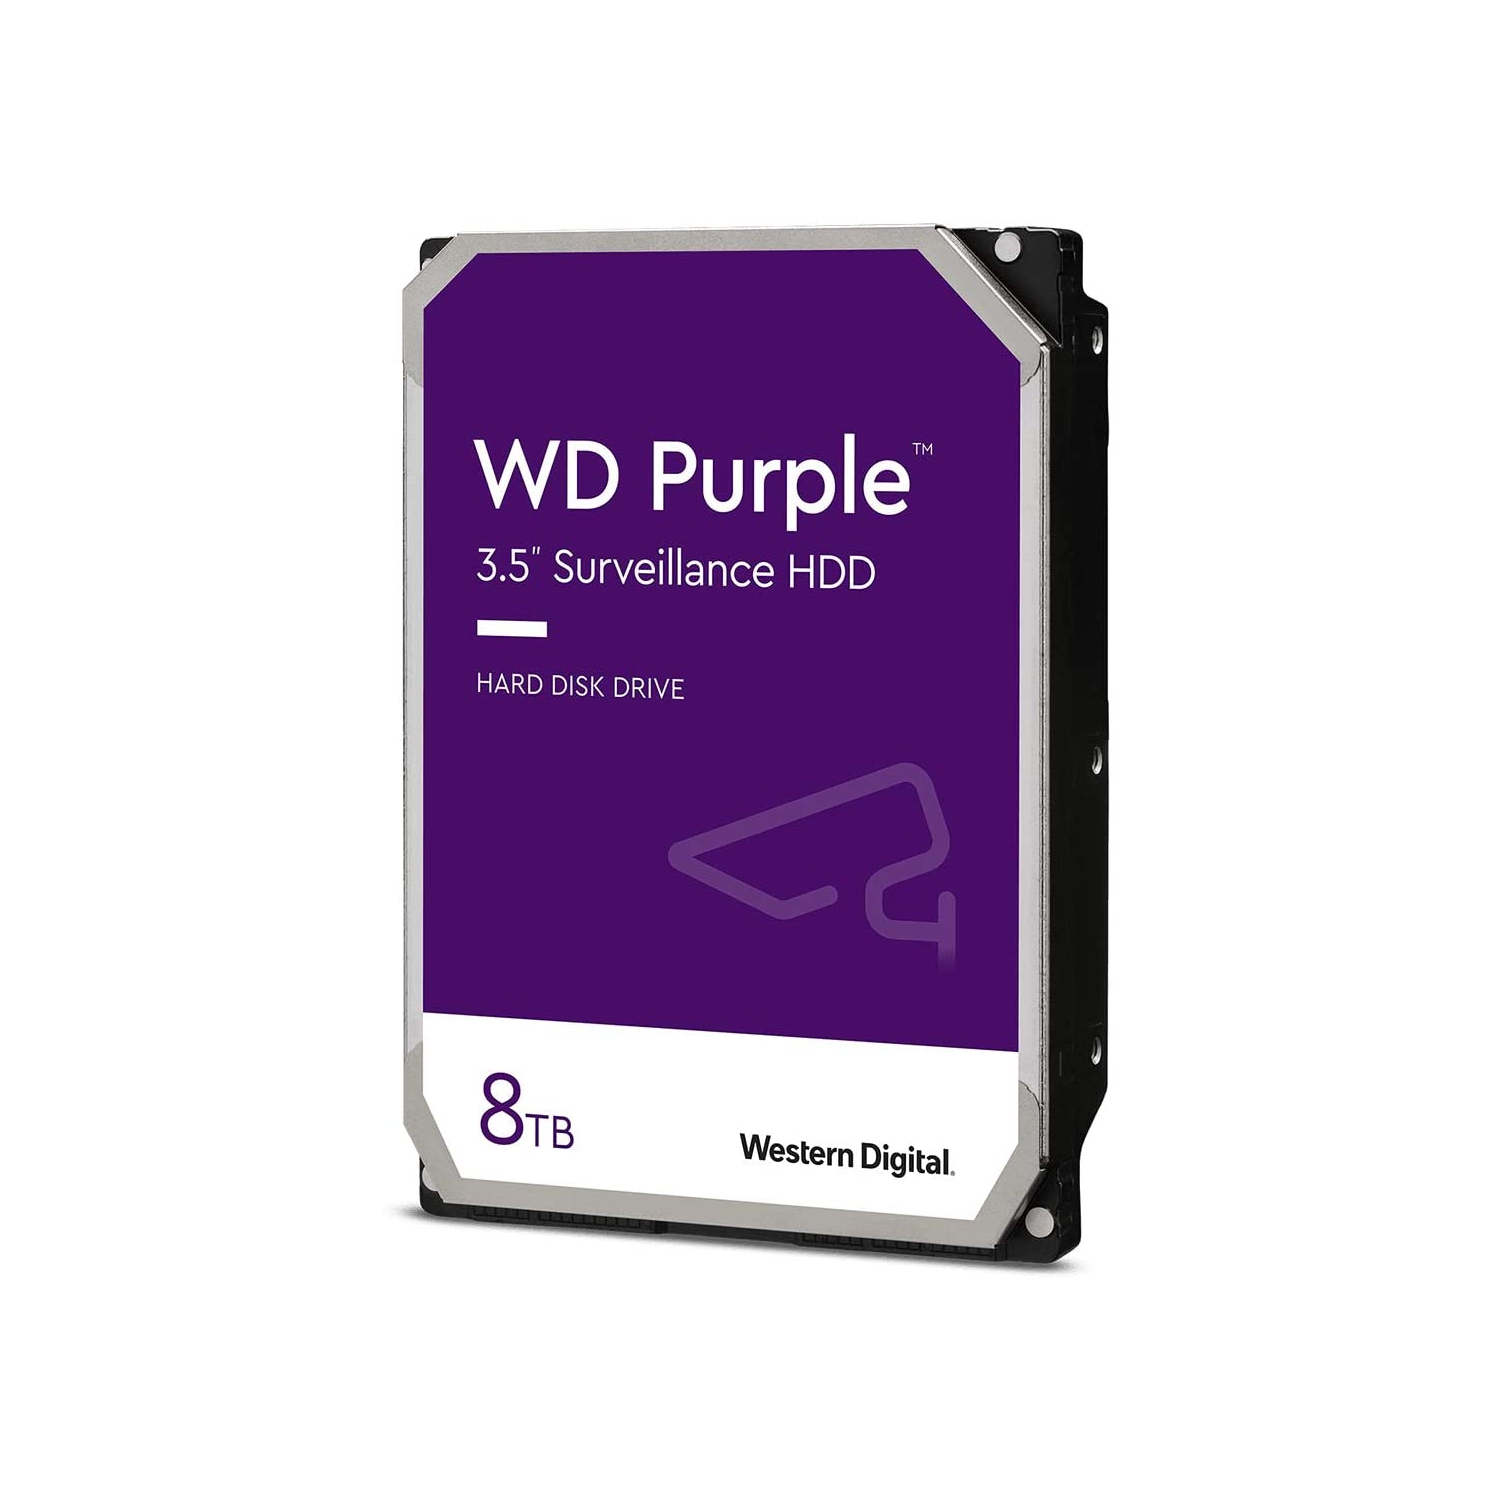 Western Digital 8TB WD Purple Surveillance Internal Hard Drive HDD - 5640 RPM, SATA 6 Gb/s, 128 MB Cache, 3.5"